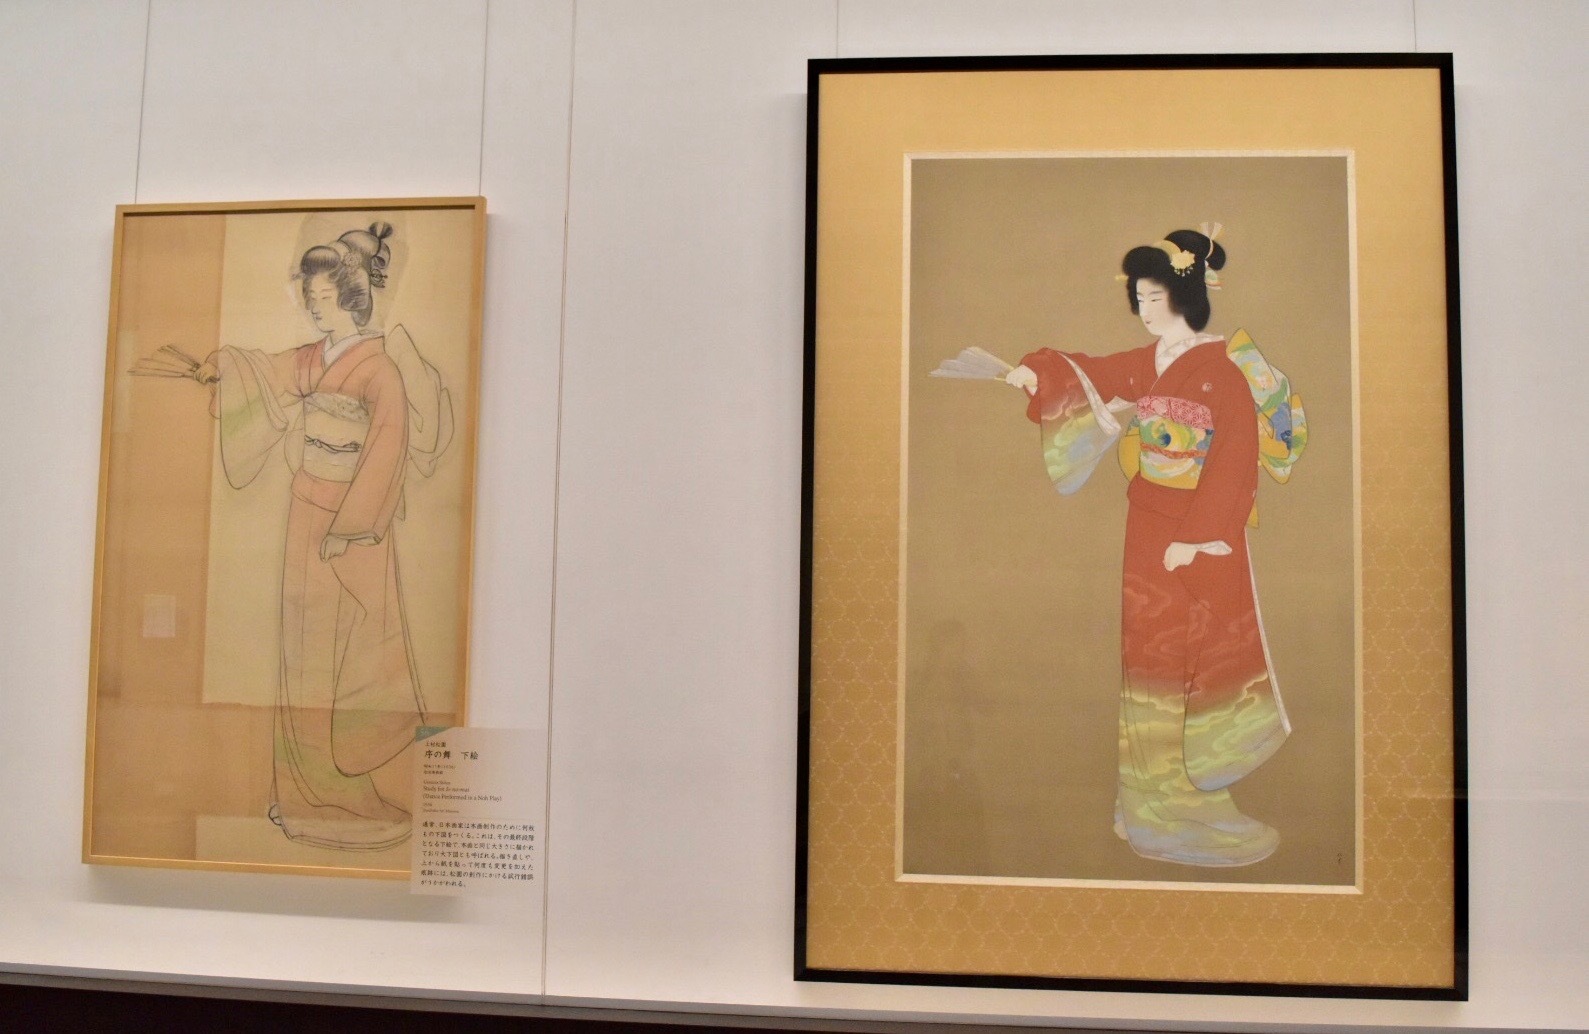  右：上村松園　《序の舞》（重要文化財）昭和11年　東京藝術大学蔵　左：上村松園　《序の舞 下絵》 昭和11年　松伯美術館蔵